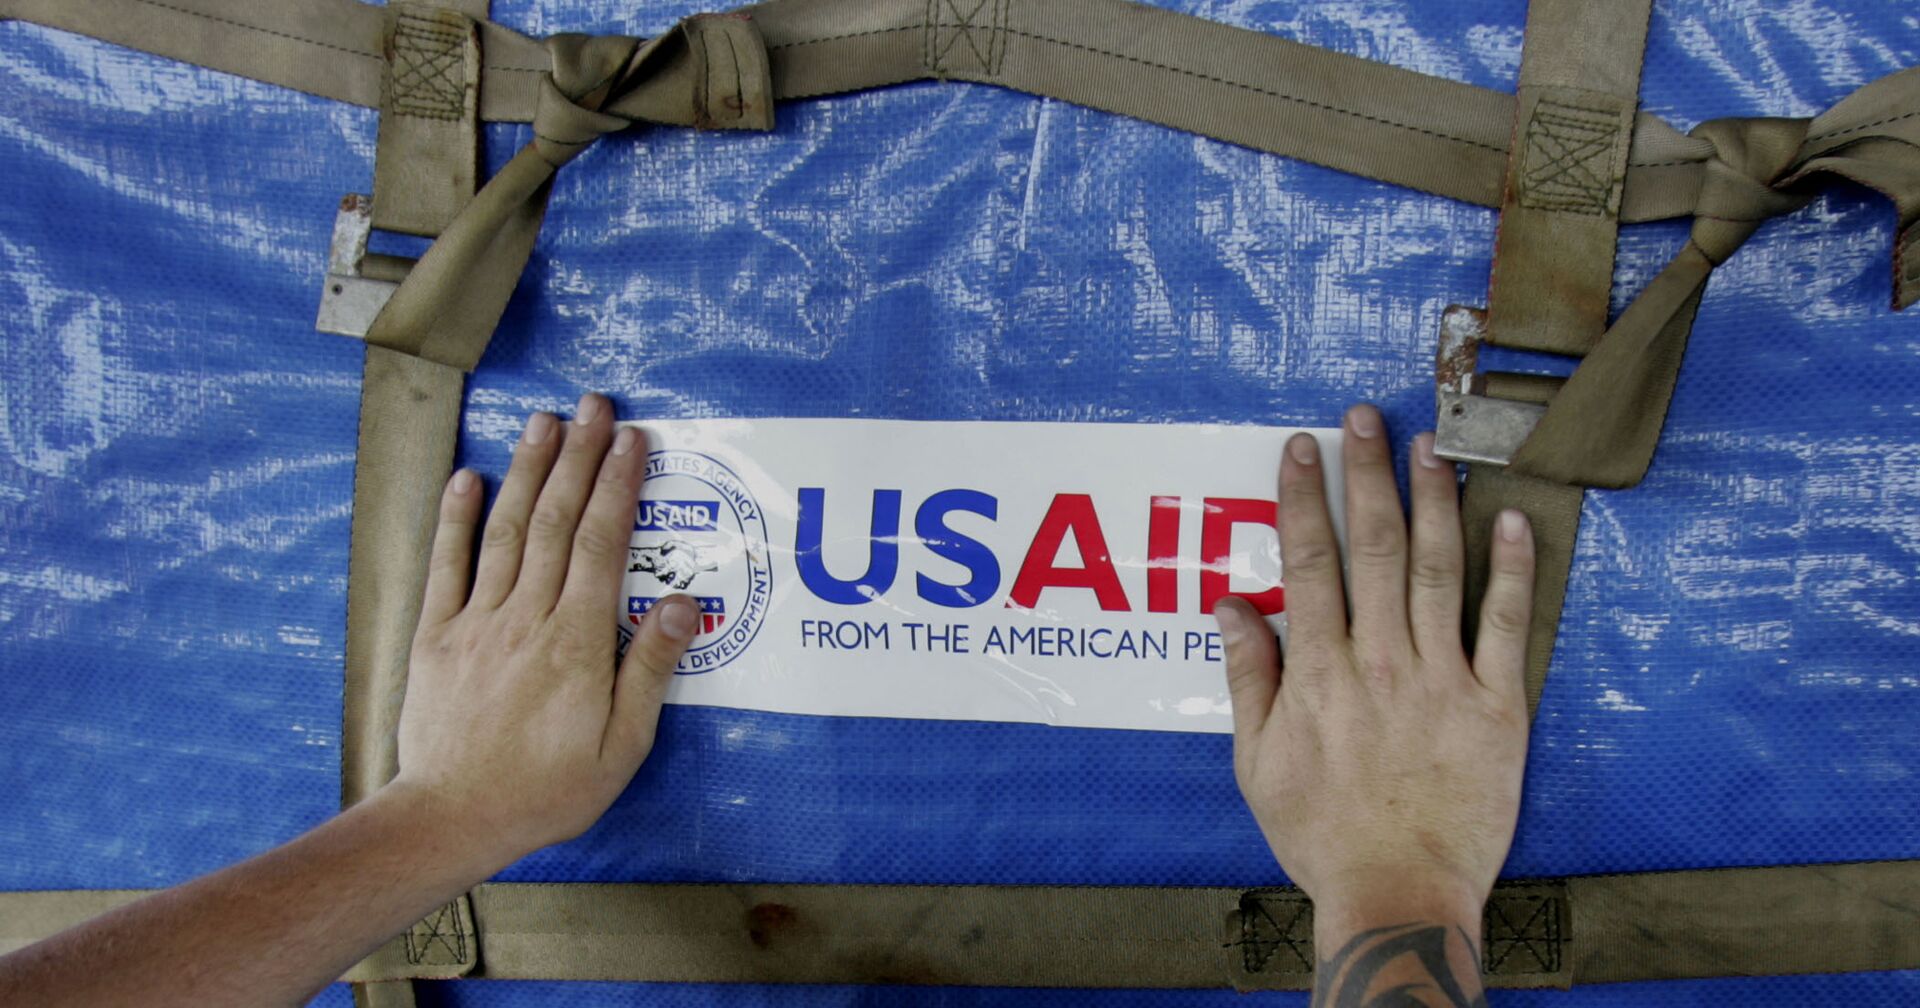 Отправка помощи USAID в Мьянму после разрушительного циклона «Наргис» - ИноСМИ, 1920, 18.03.2021